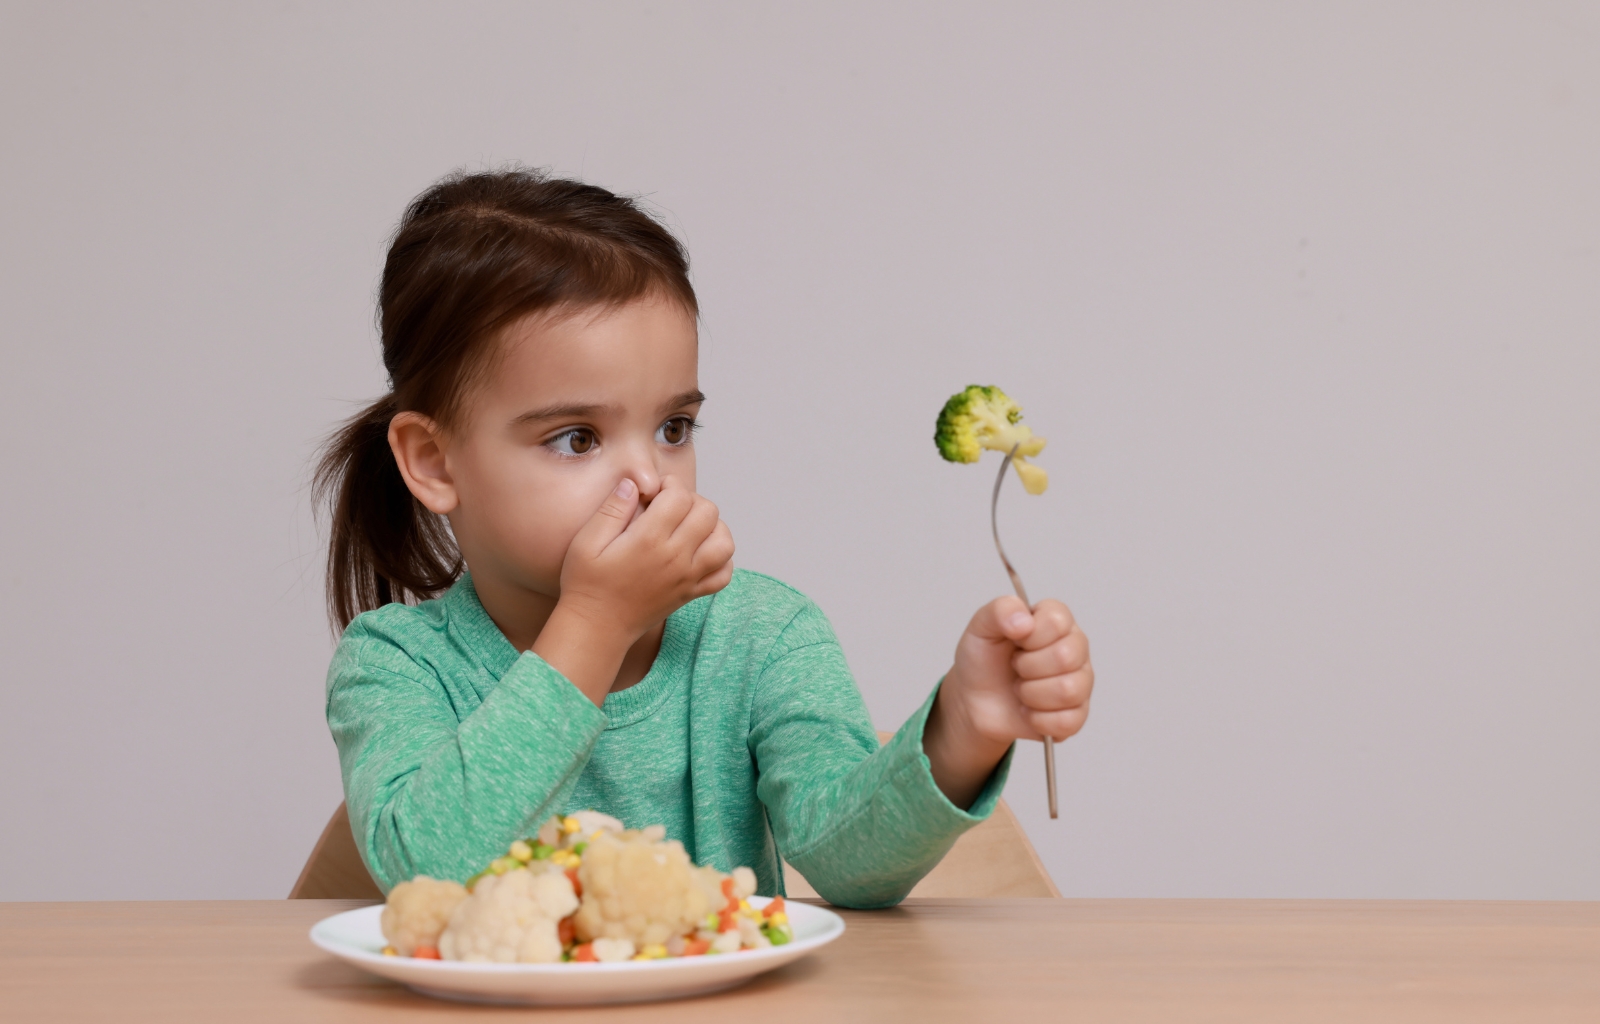 Meu filho parou de comer: entenda a recusa alimentar infantil